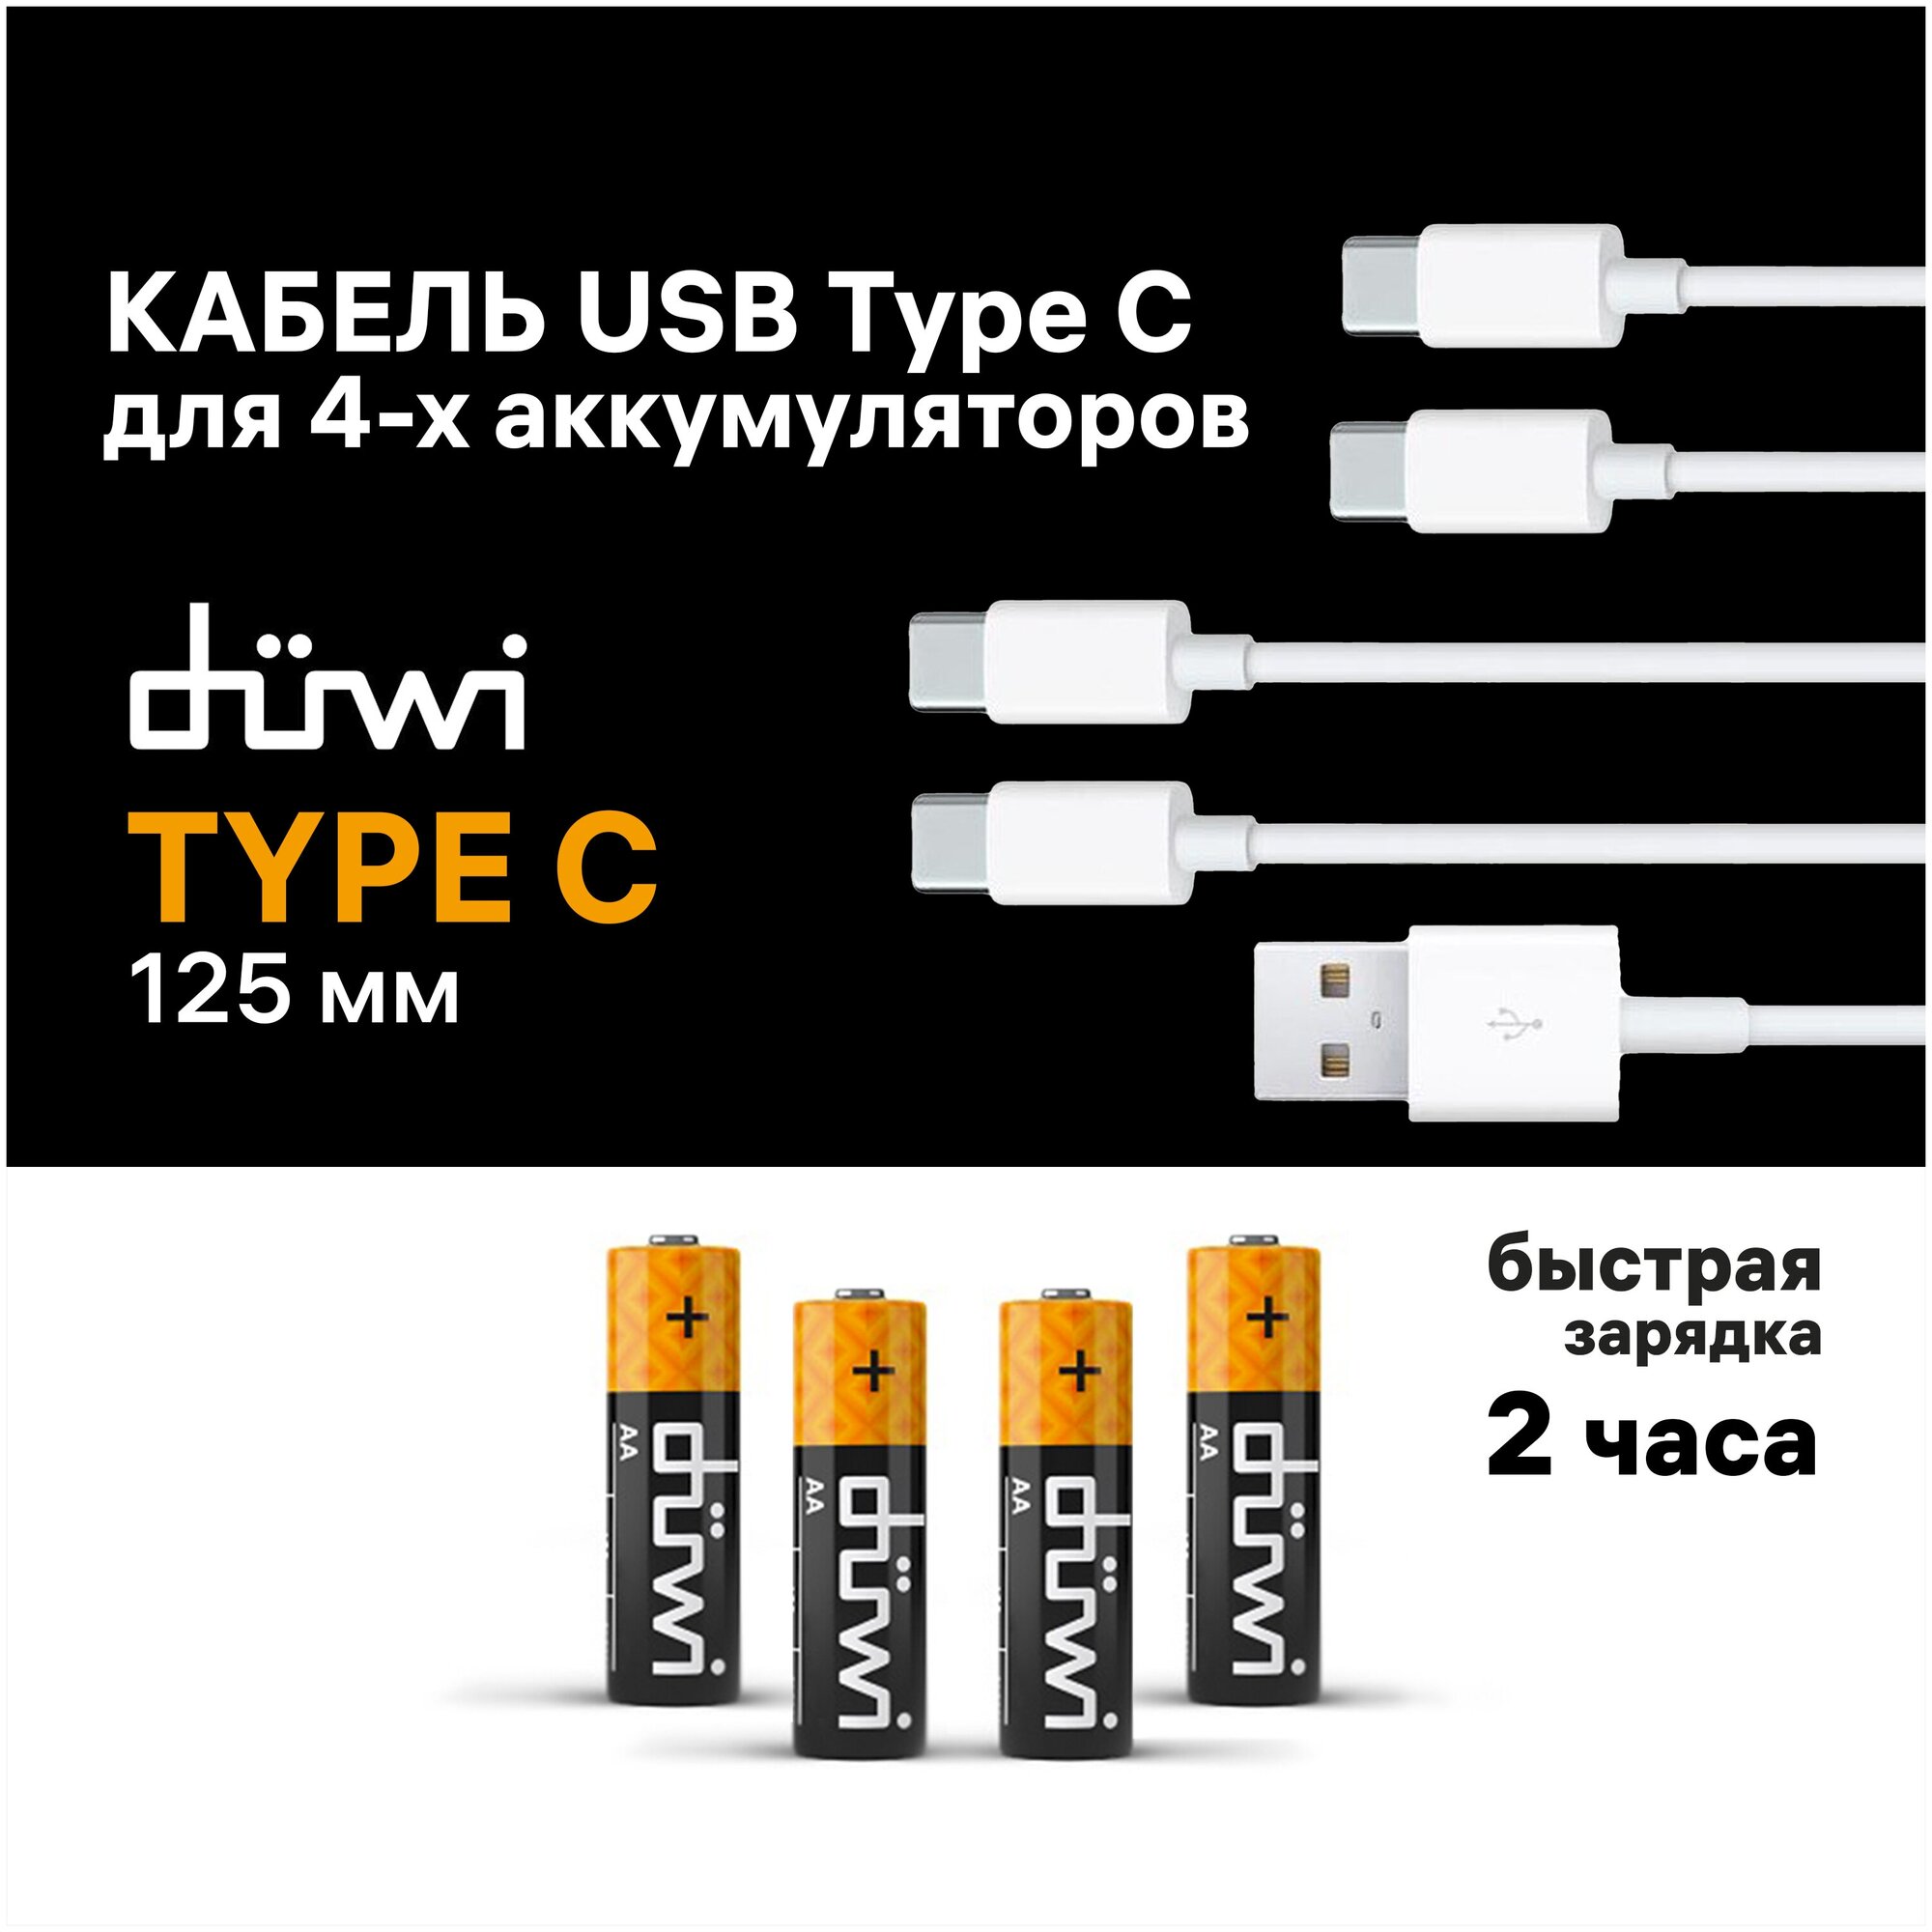 Кабель USB-C Duwi для единовременной зарядки 4 аккумуляторов 62018 1